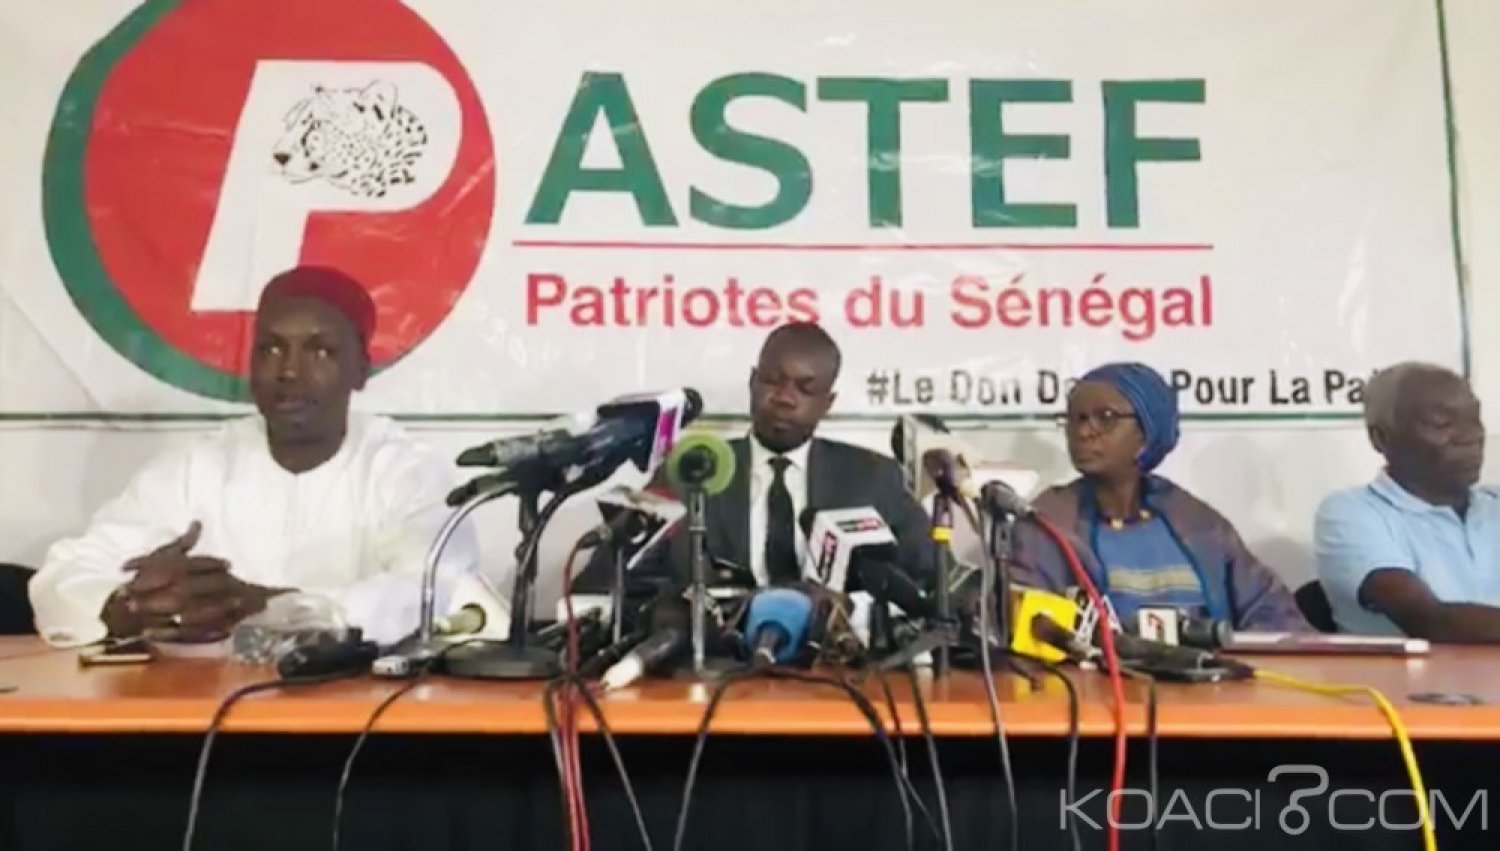 Sénégal : Dialogue national après le Pds de Me Abdoulaye Wade, Pastef-les Patriotes boude Macky Sall